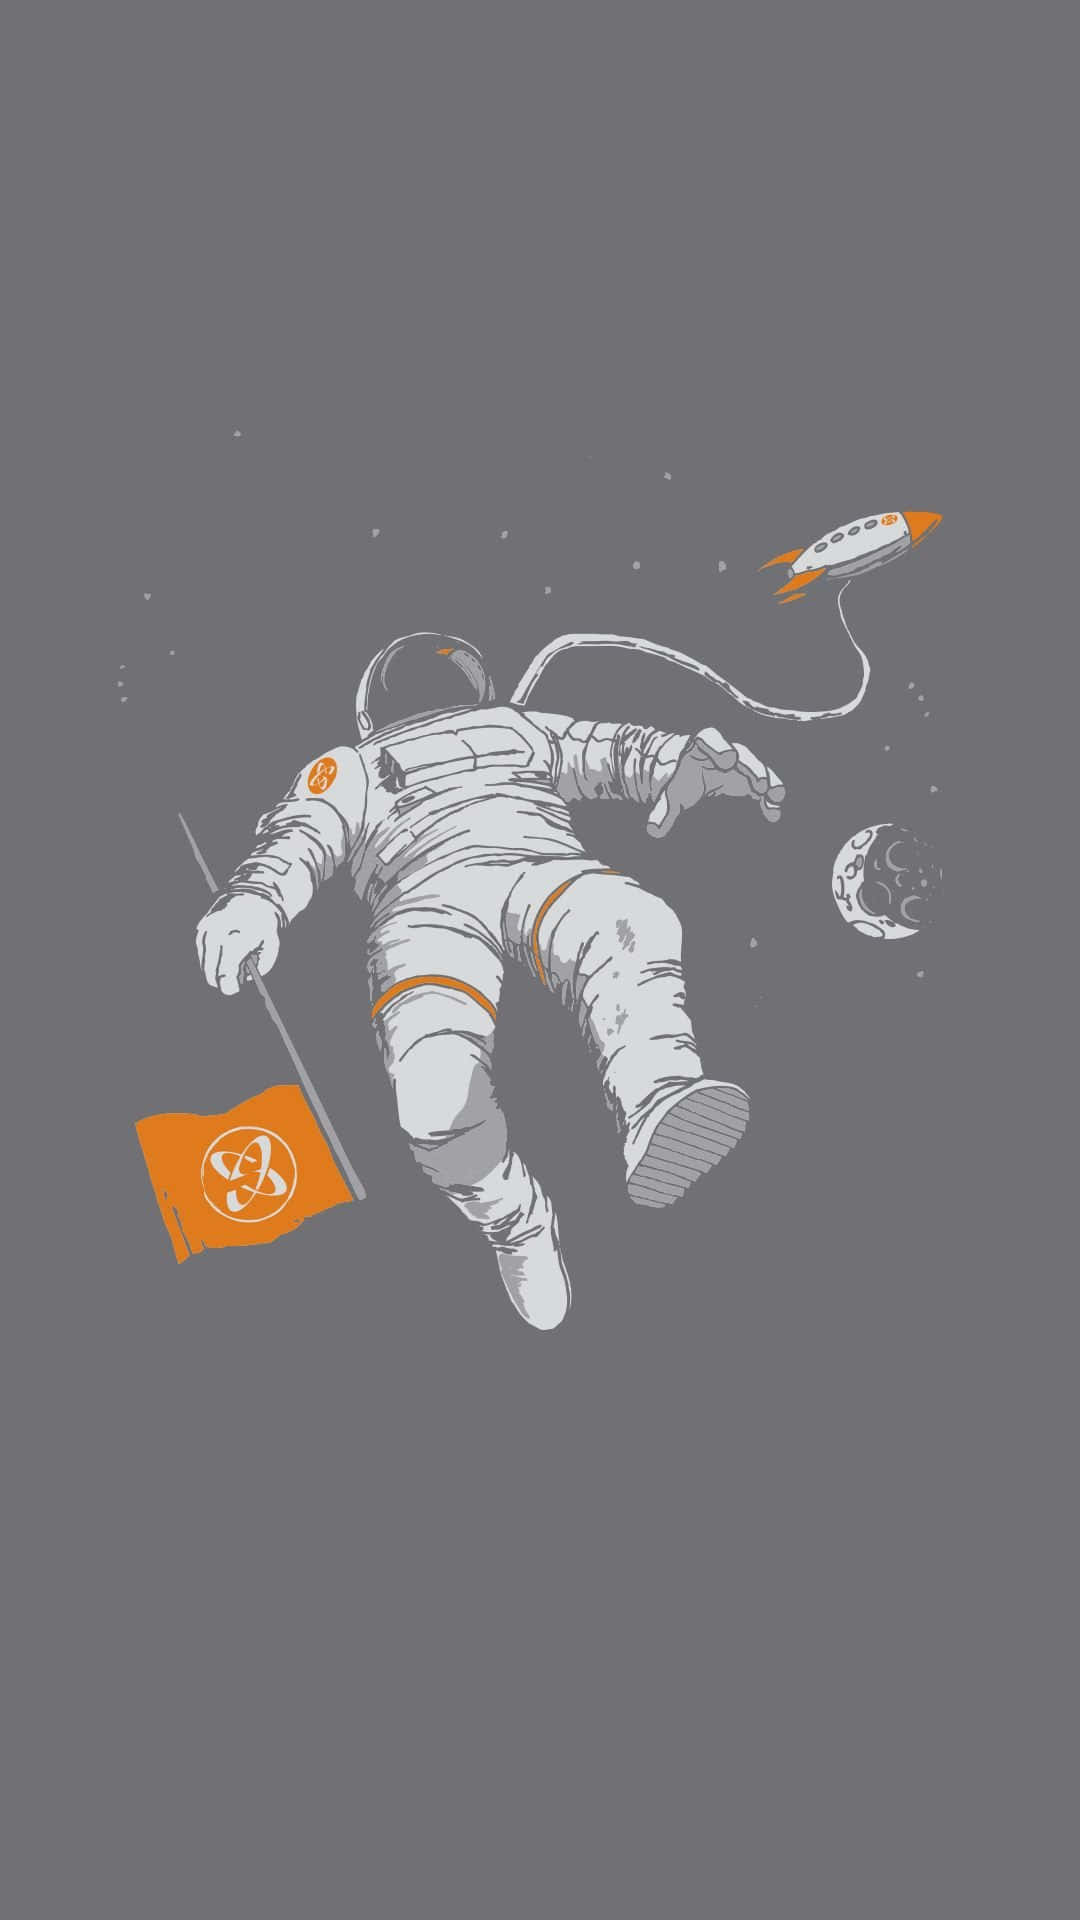 Gør hvert øjeblik unik med astronaut iphone tapet. Wallpaper